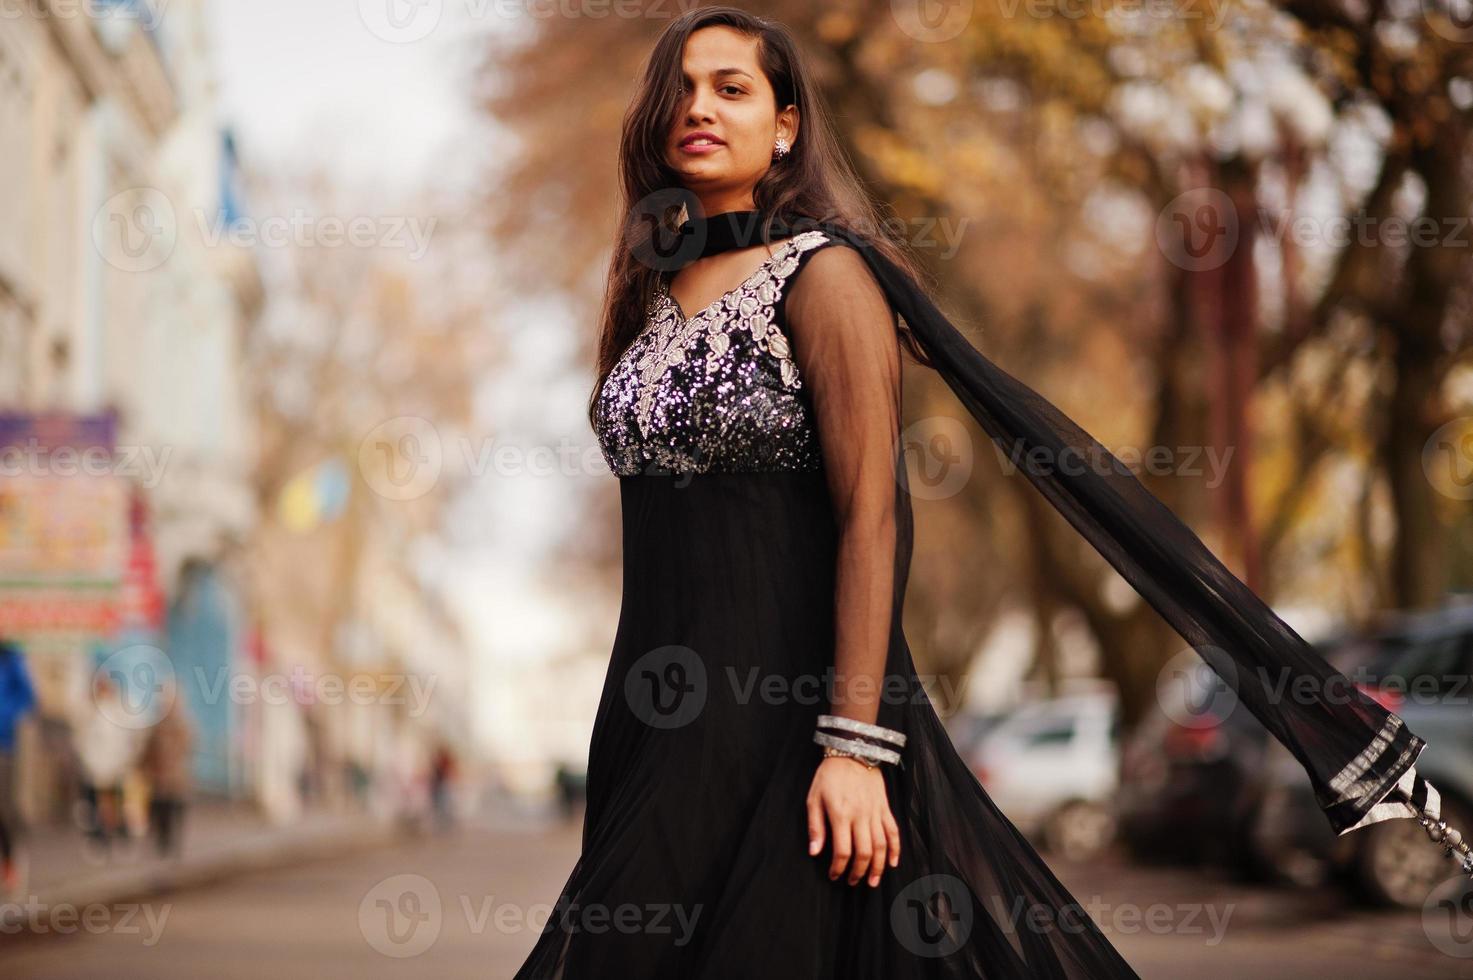 vrij indisch meisje in zwarte saree-jurk poseerde buiten in de herfststraat. foto